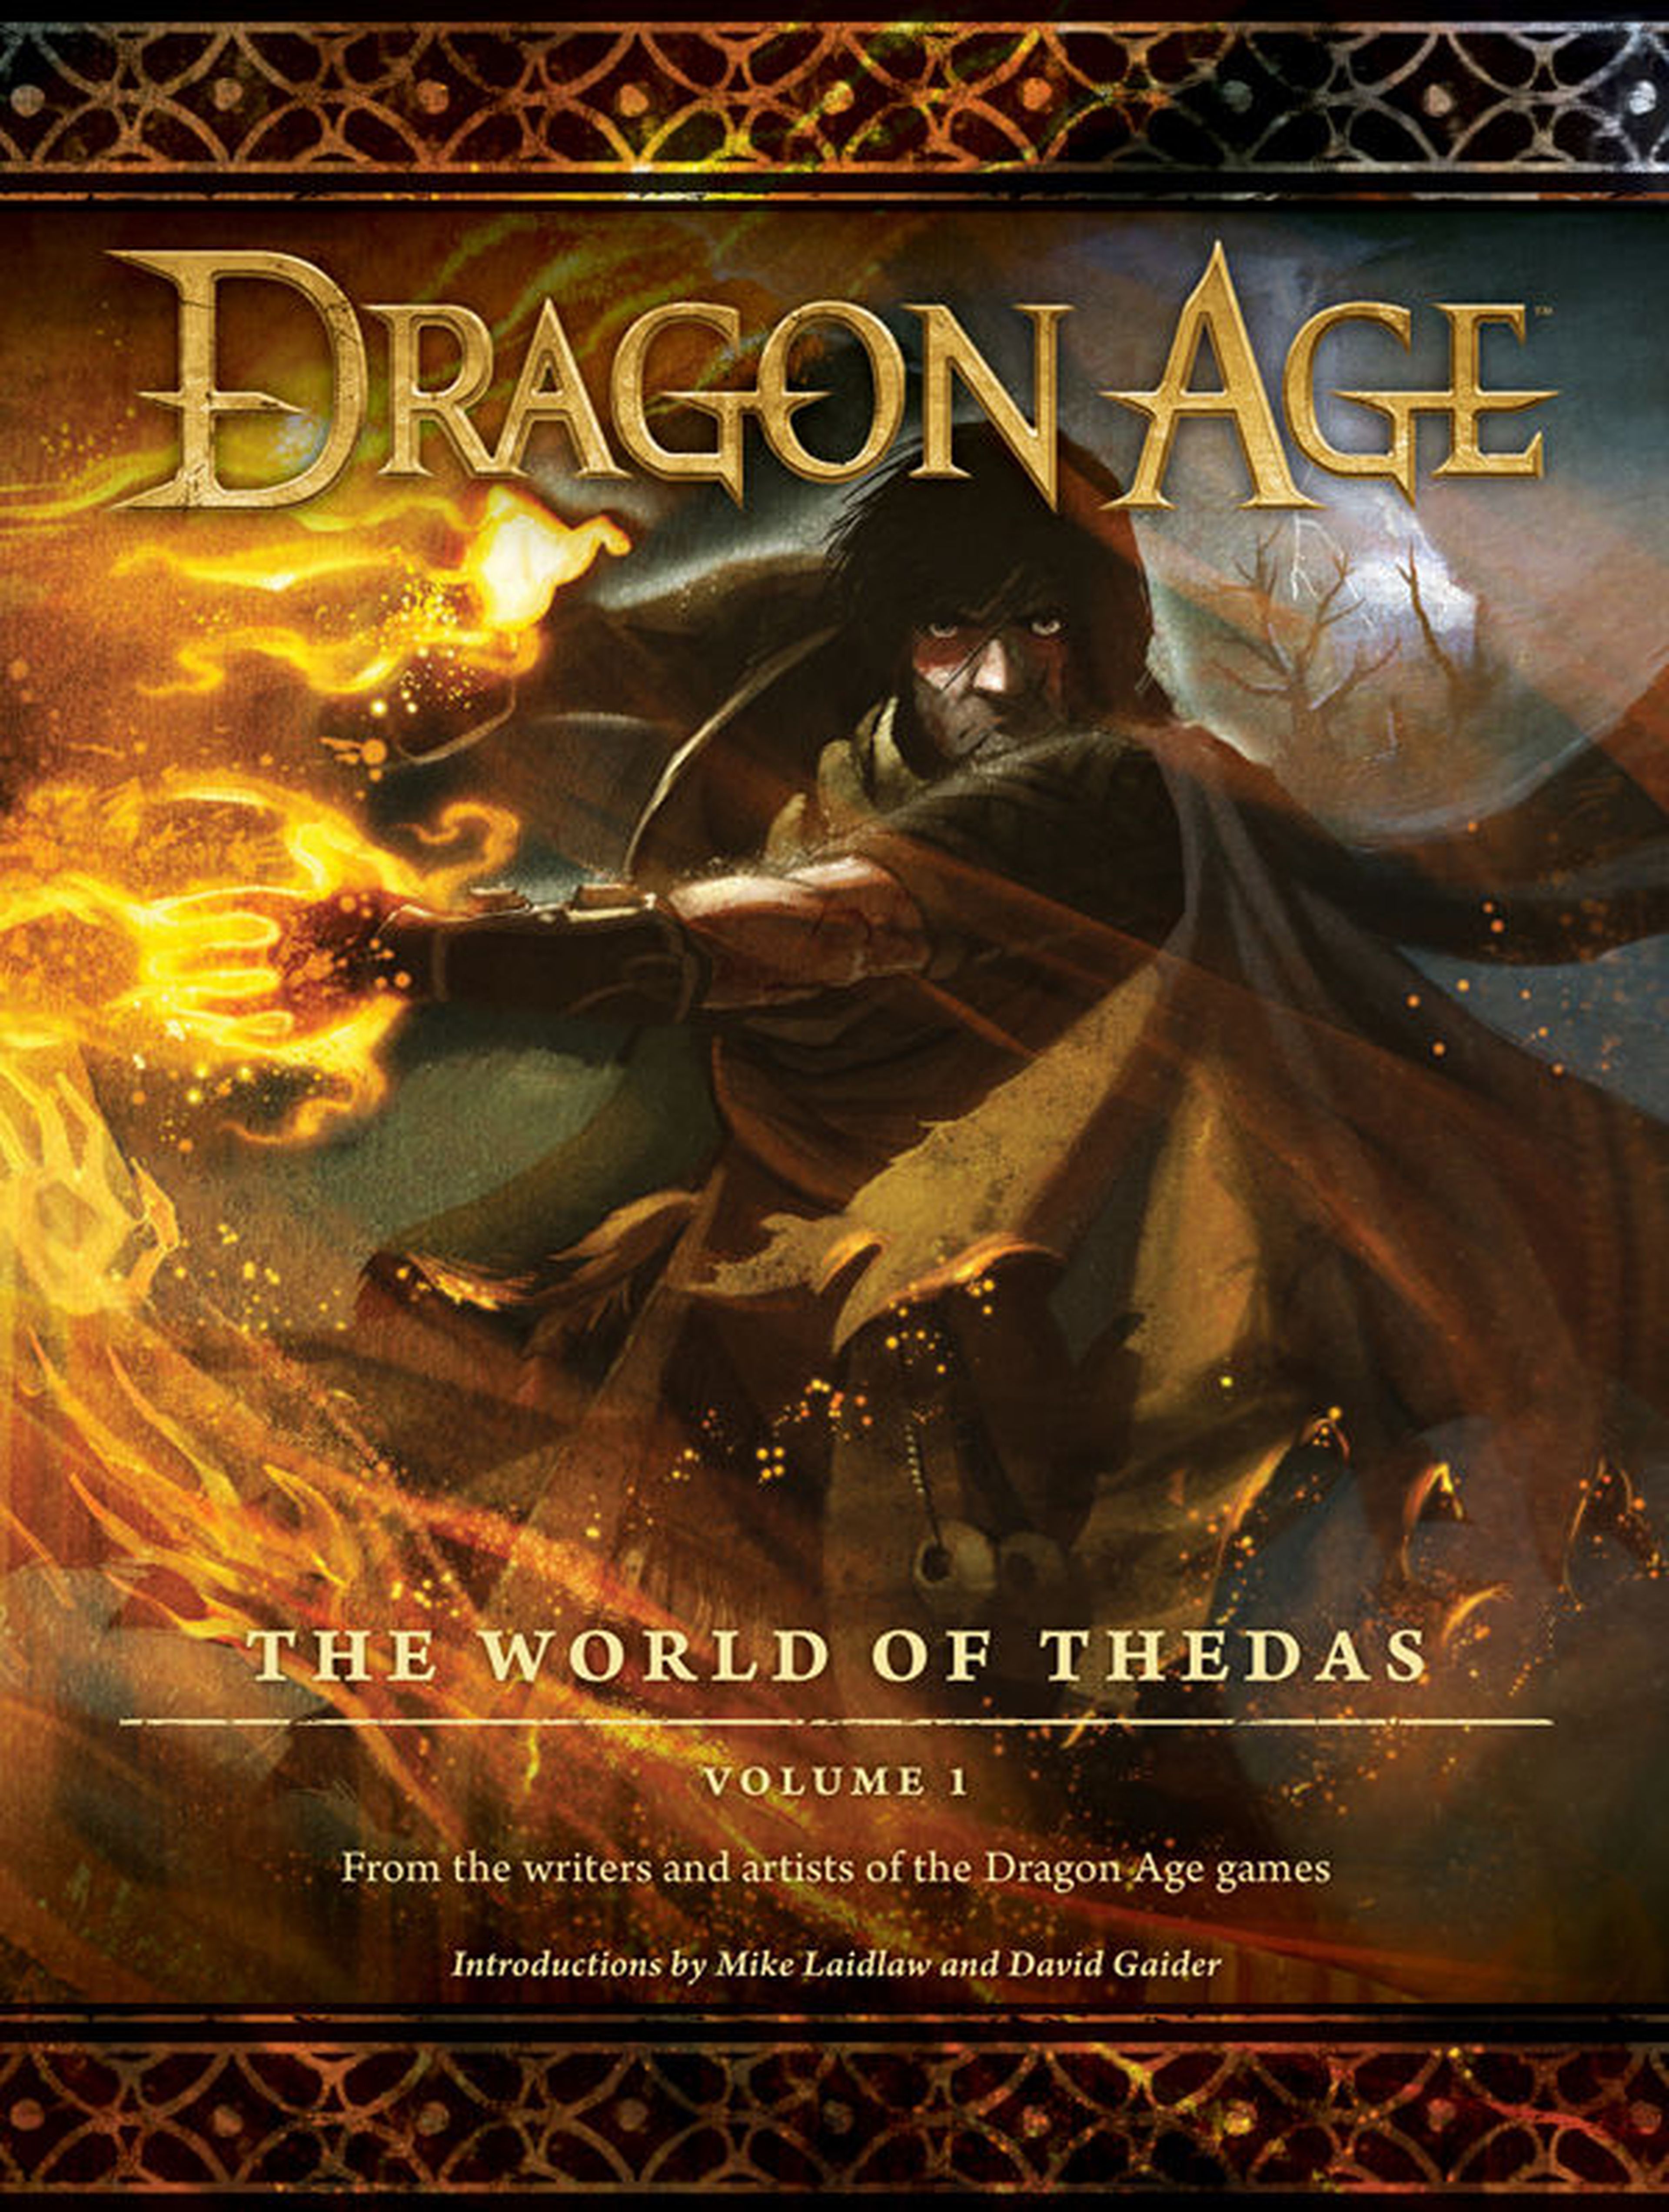 EEUU: Dragon Age: The World of Thedas saldrá en abril